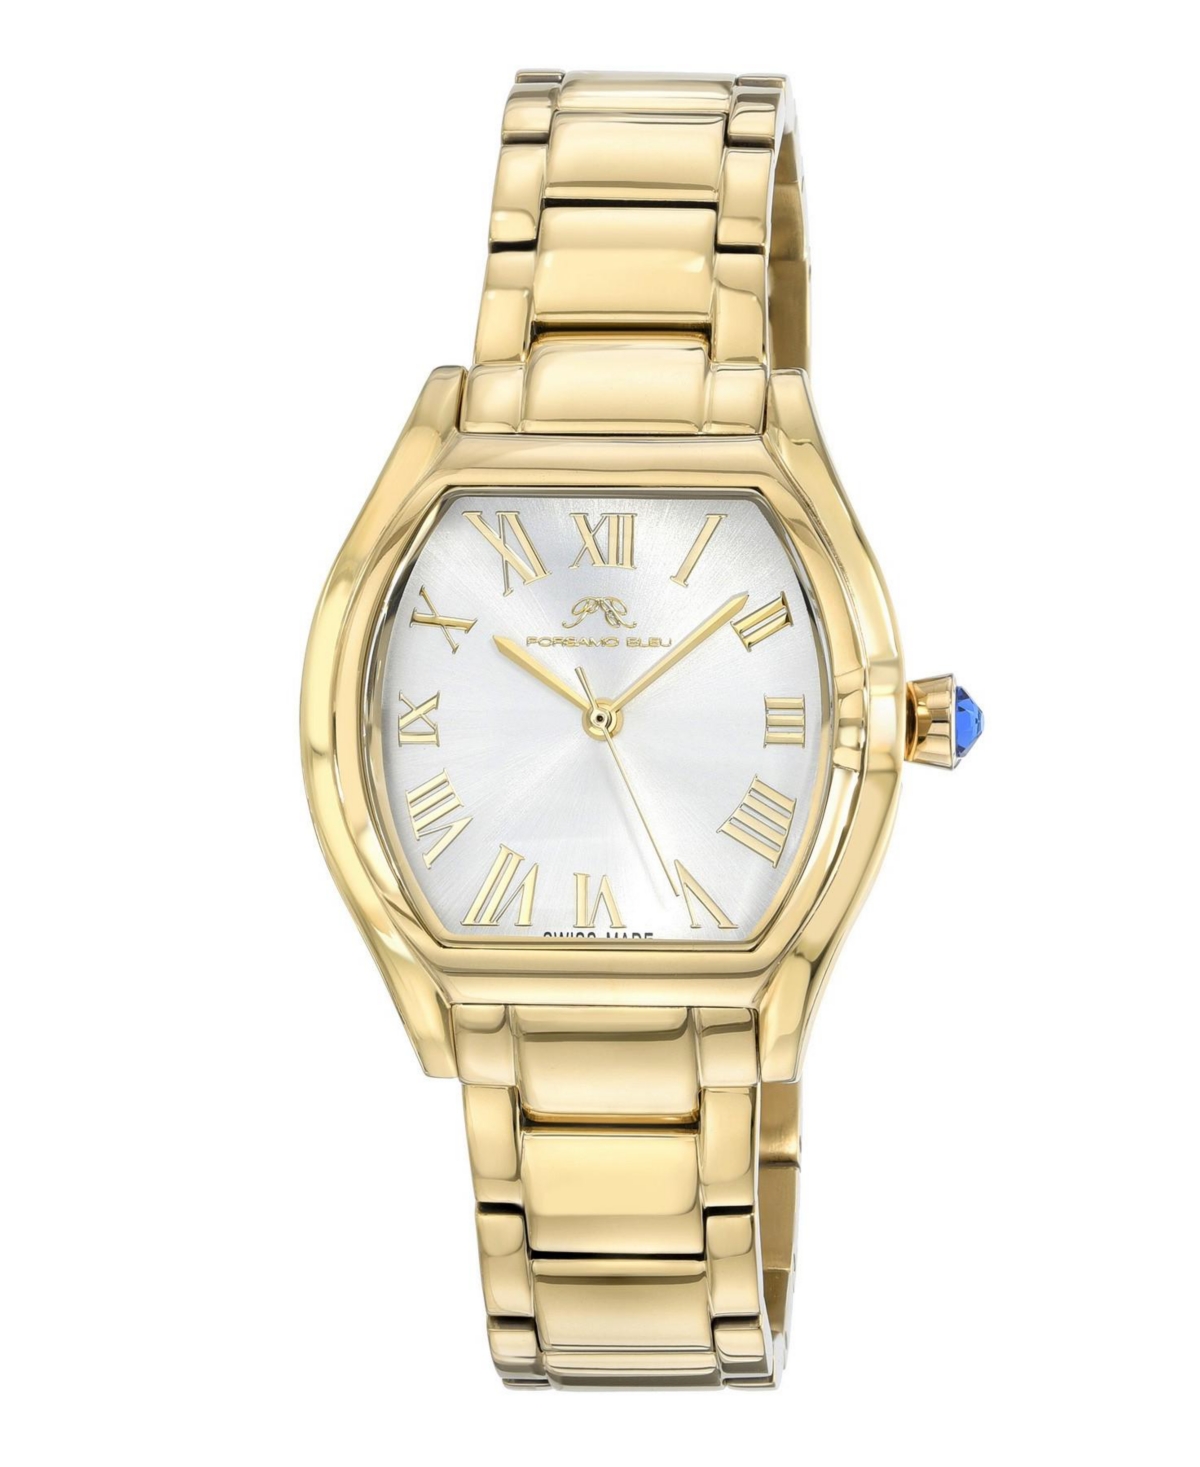 Women's Celine Stainless Steel Bracelet Watch - Gold